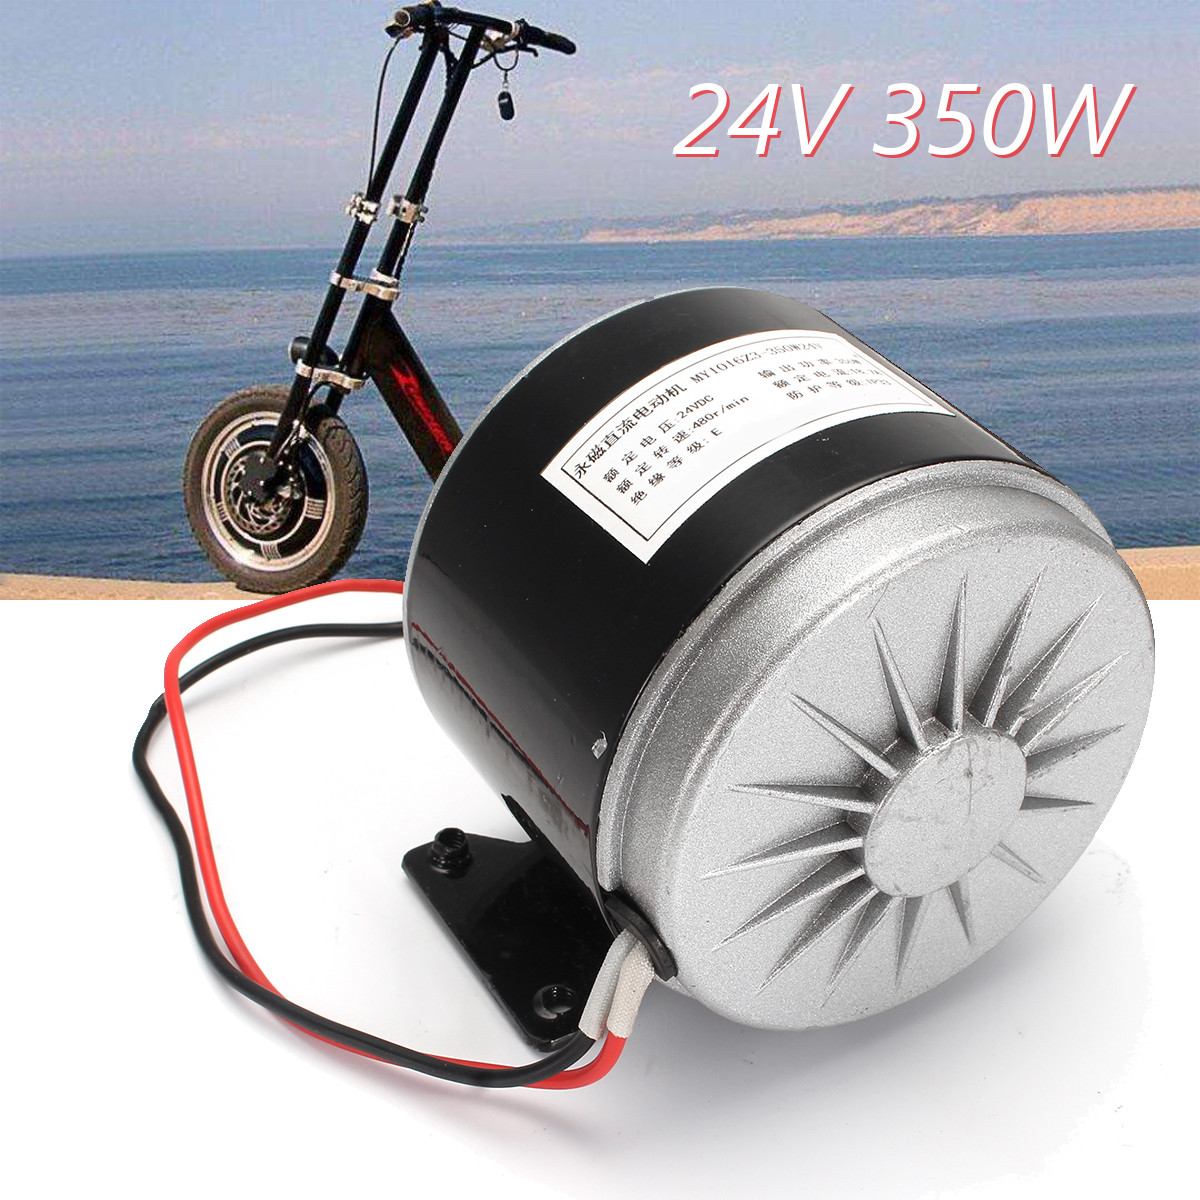 24v dc 350w konverteringssæt til elektrisk scooter motor  my1016 børstet motorsæt til elektrisk cykel  zy1016 elektrisk motor